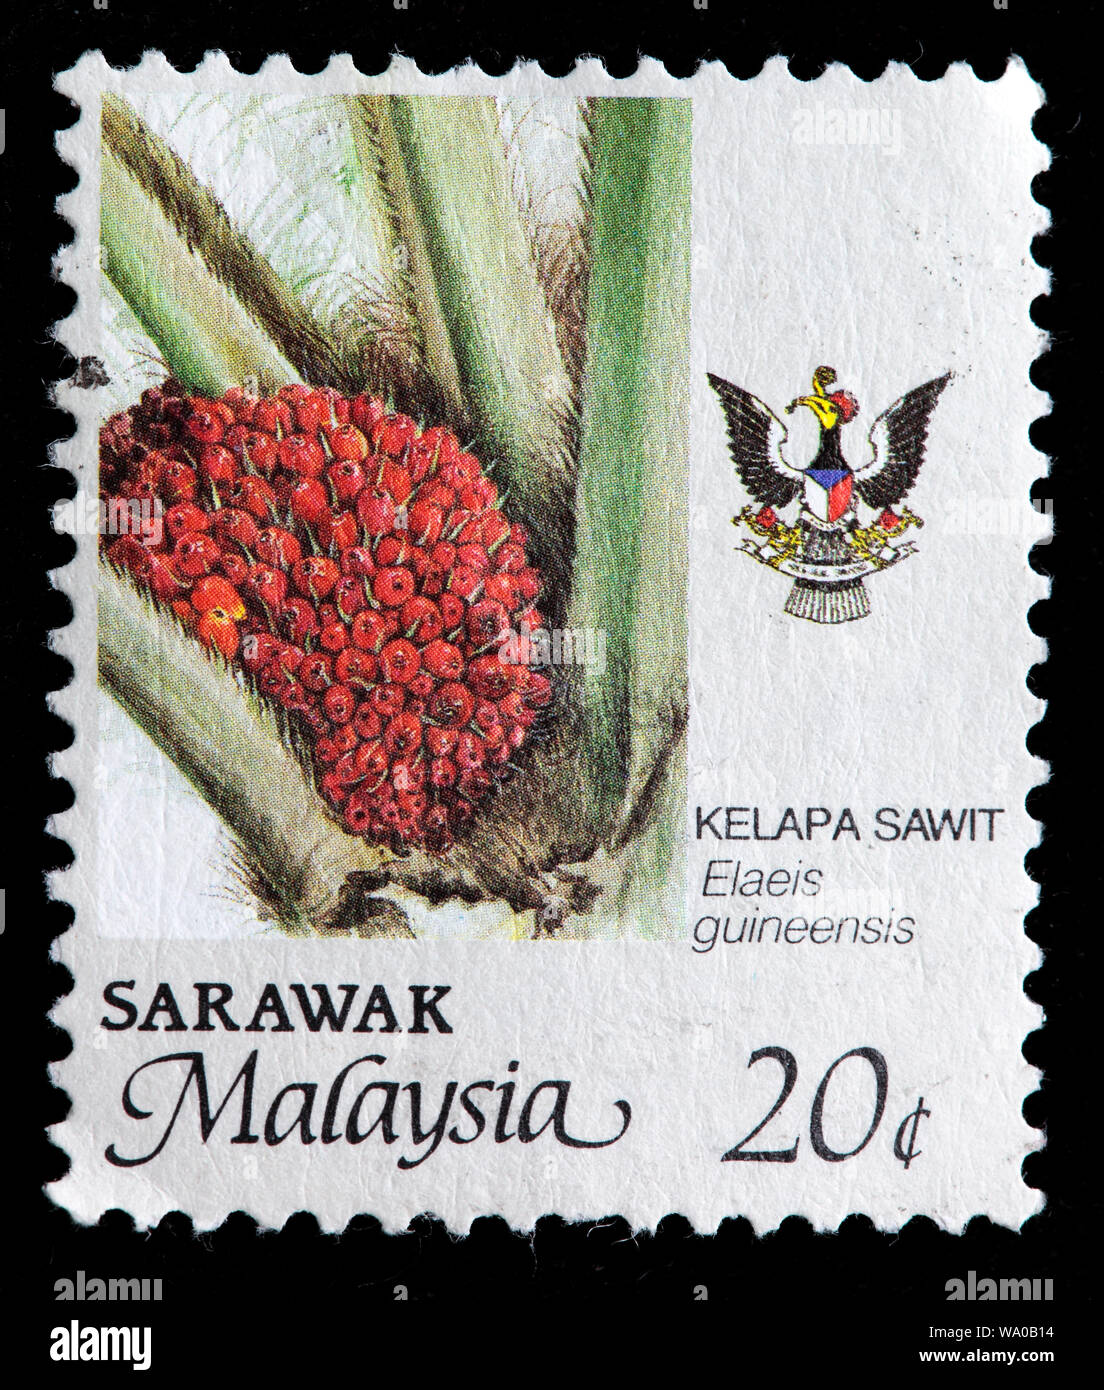 Elaeis guineensis, oil palm, postage stamp, Sarawak, Malaysia, 1986 Stock Photo